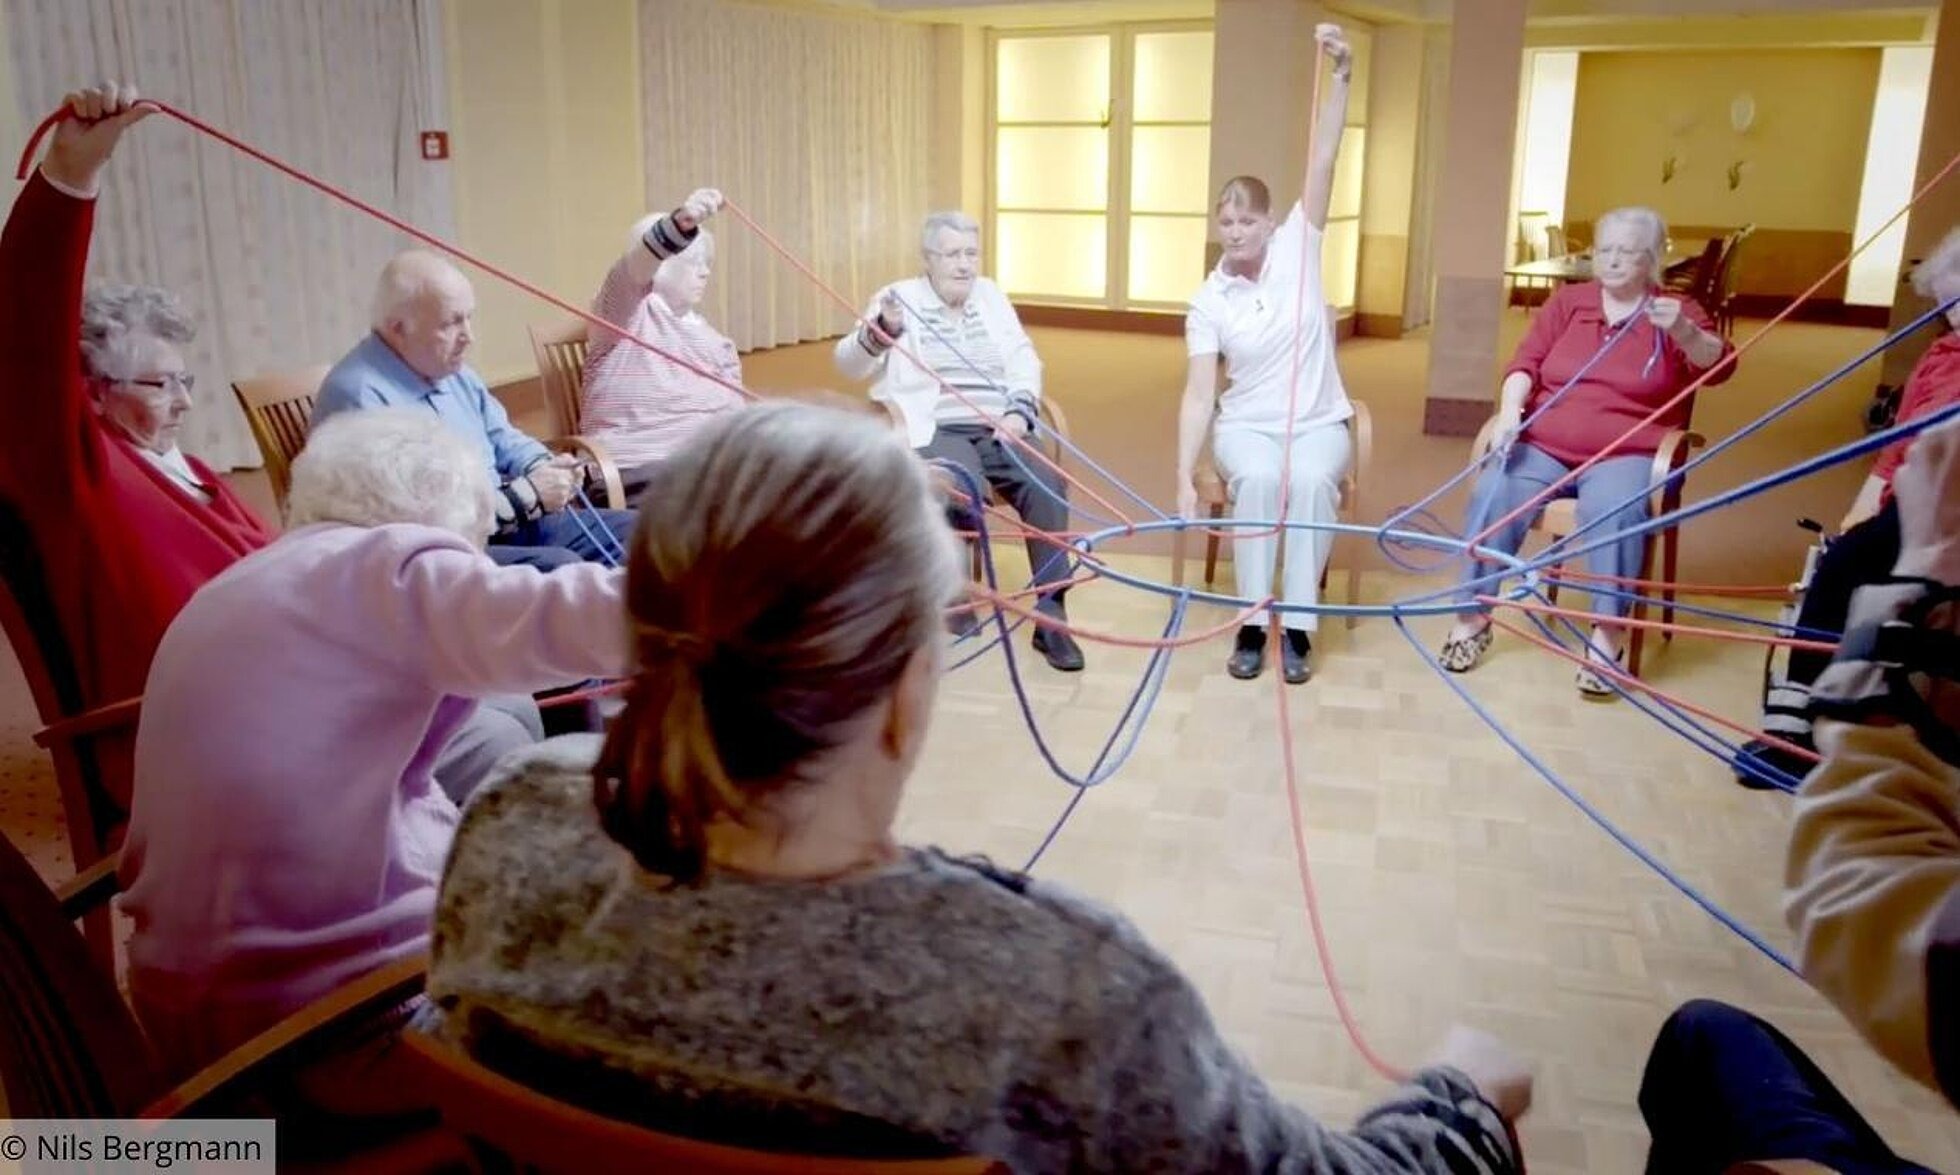 Gruppe von älteren Menschen hält mit Seilen einen Ring in der Mitte.